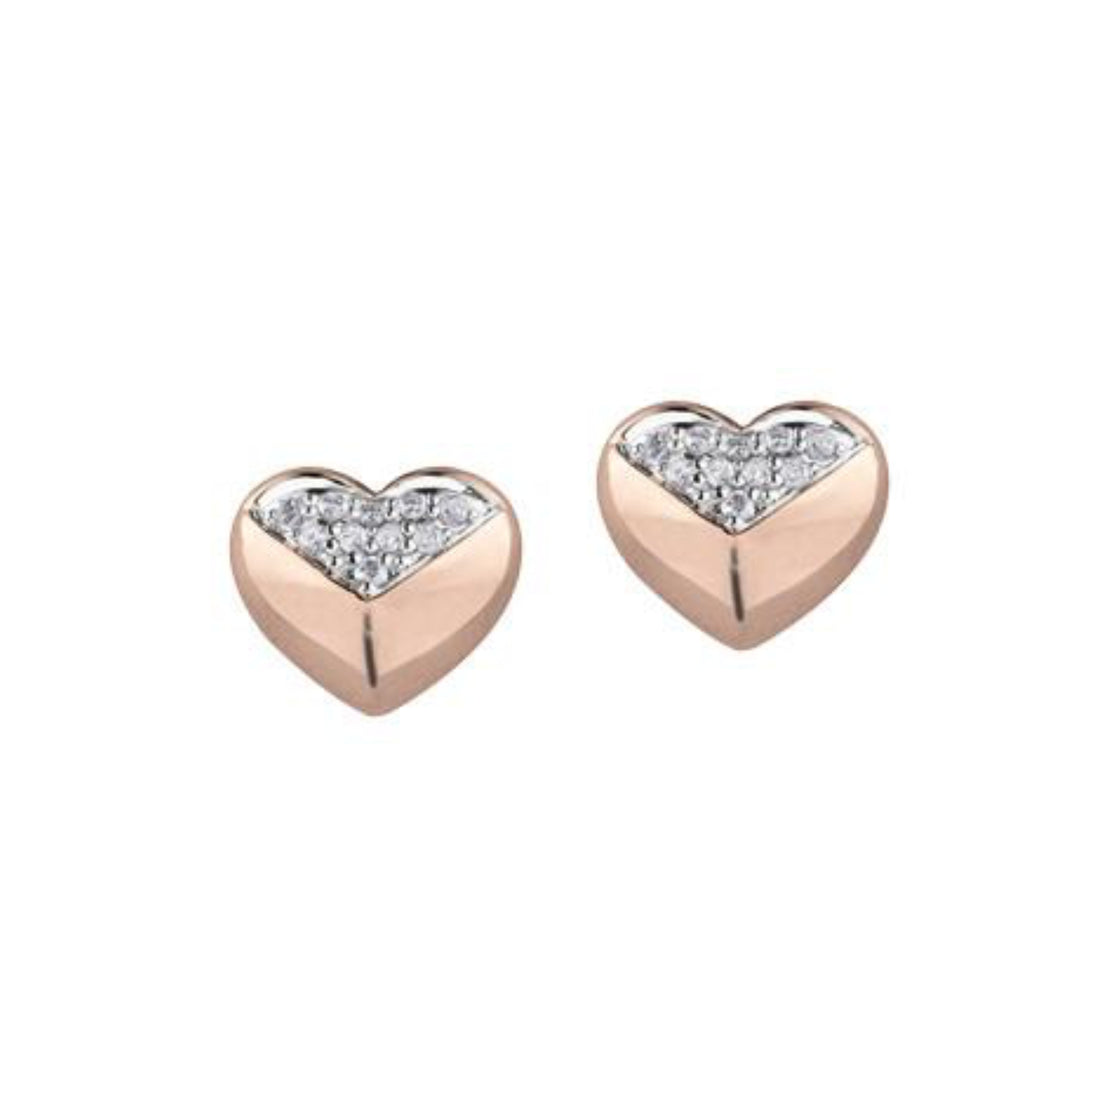 10K Rose Gold Heart Diamond Earrings